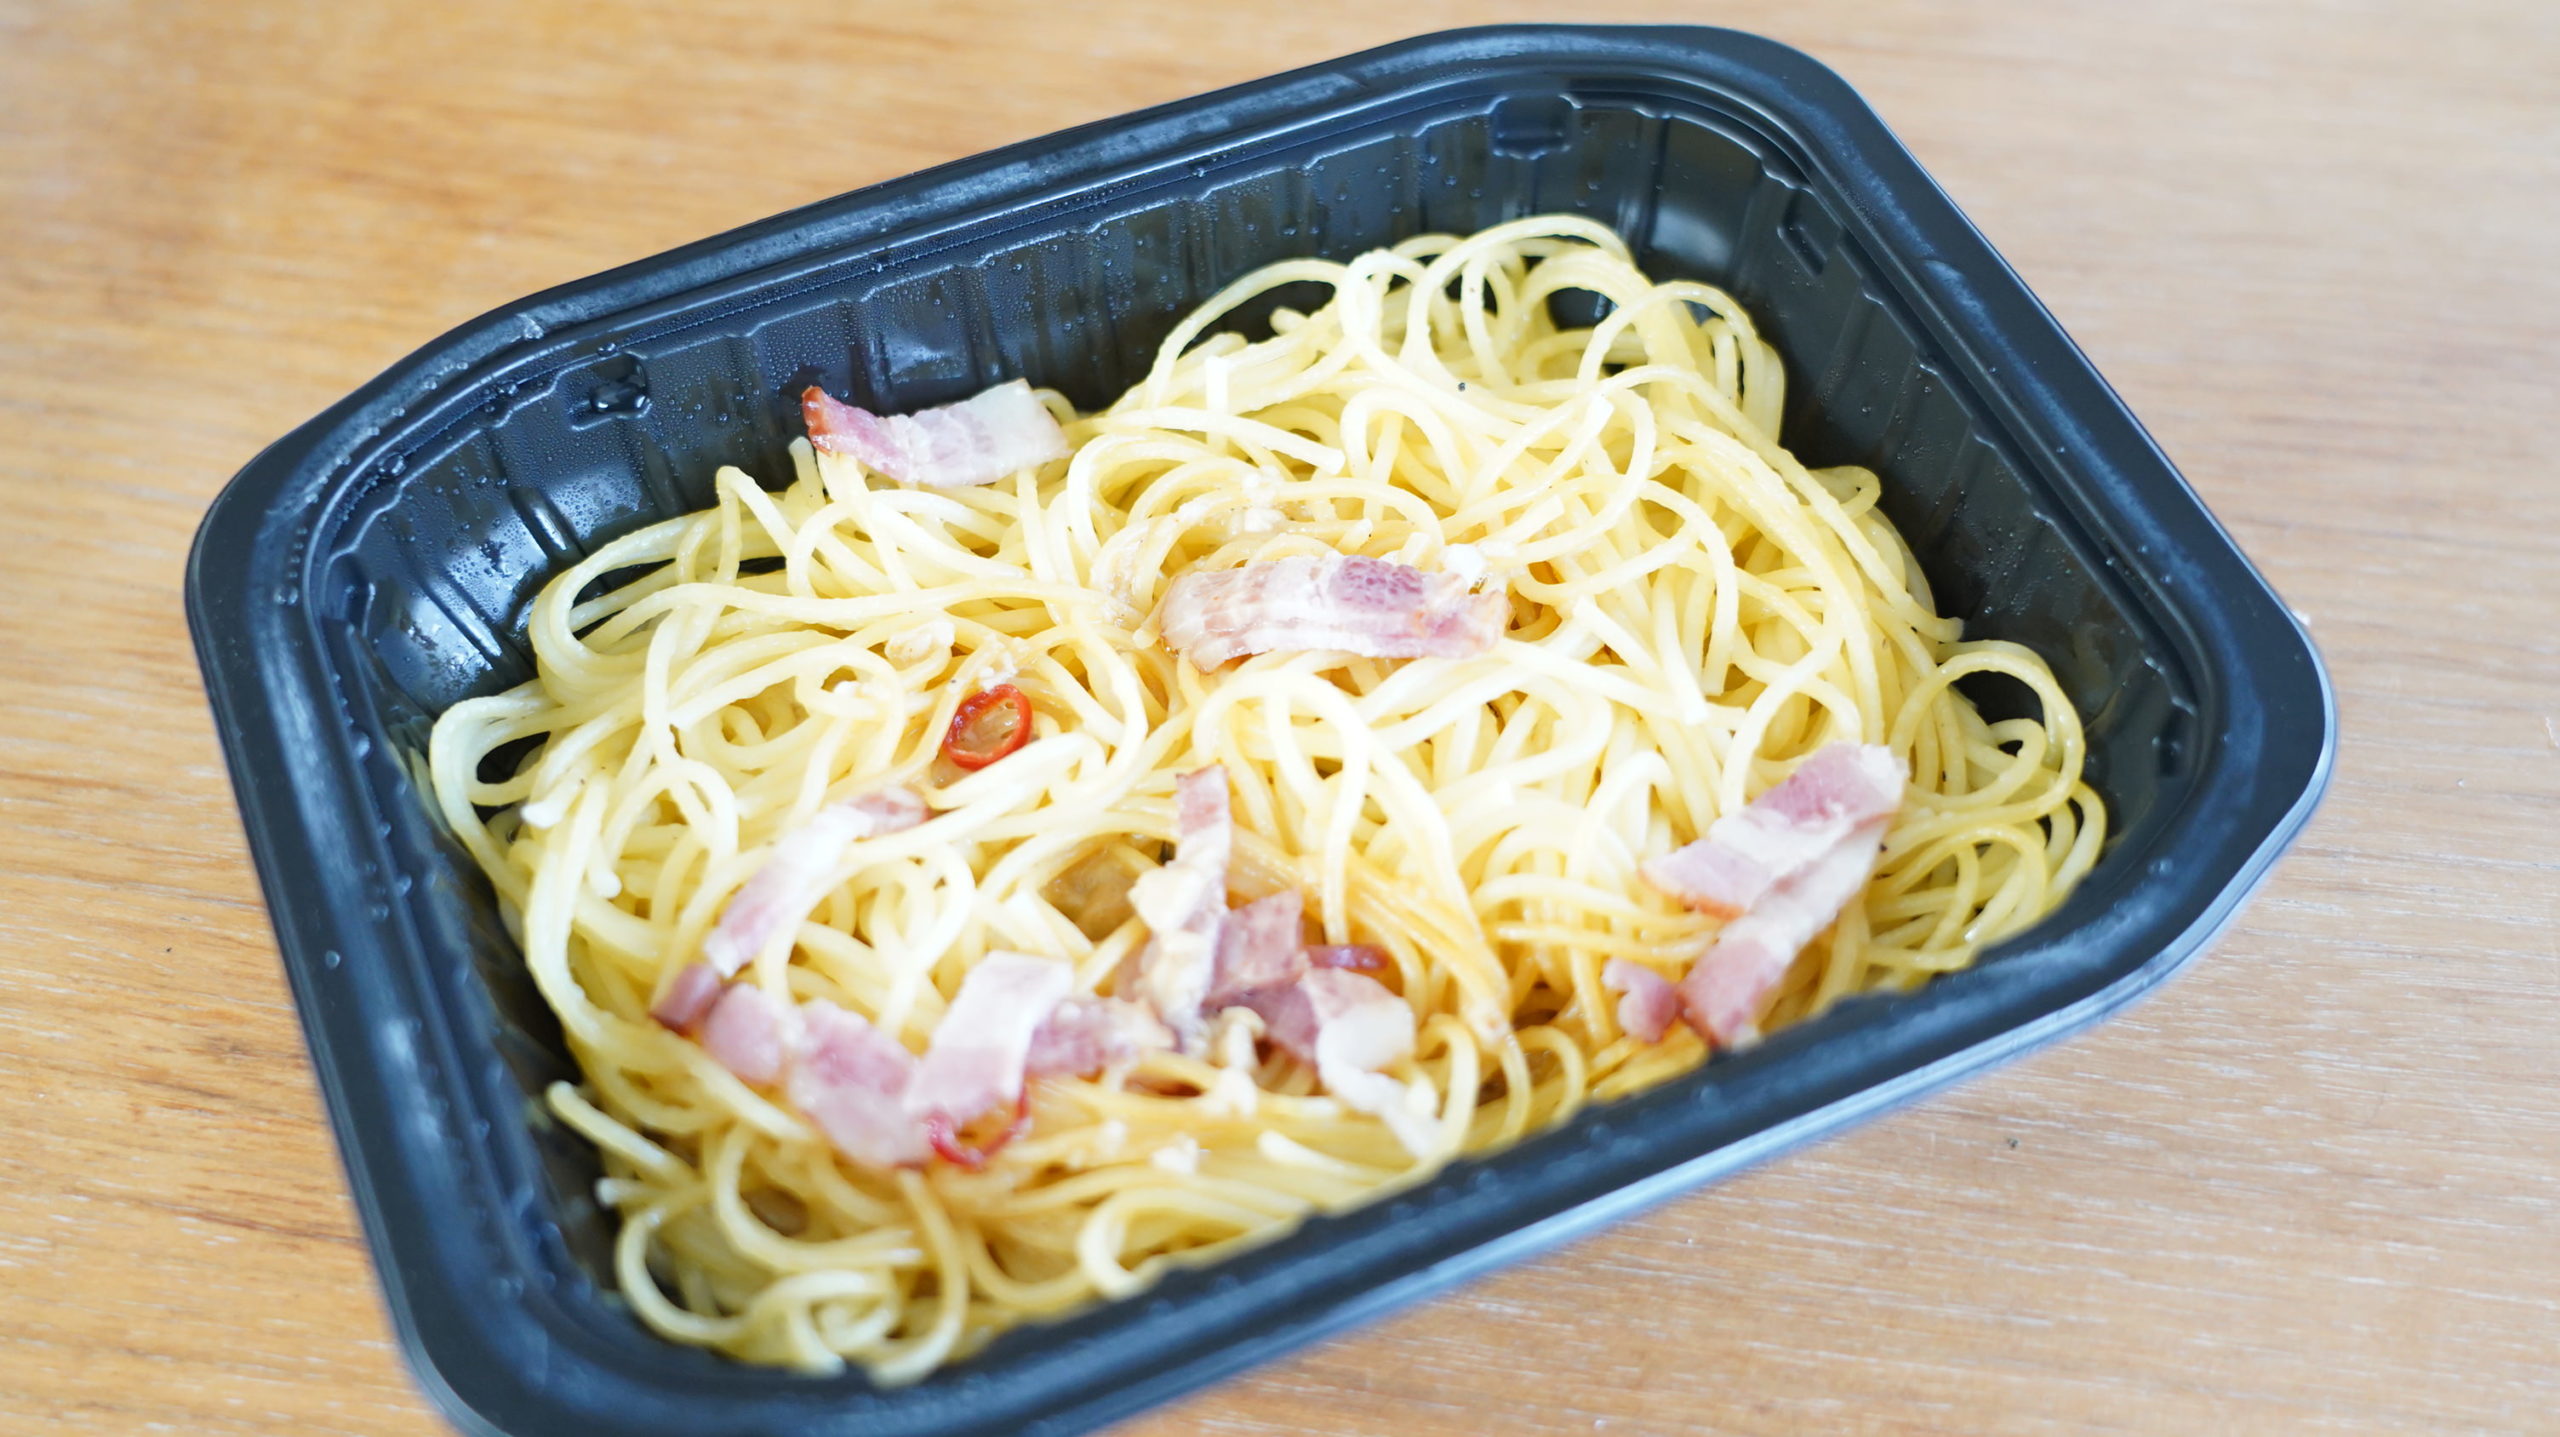 セブンイレブンのおすすめ冷凍食品「スパゲッティペペロンチーノ」の中身の写真